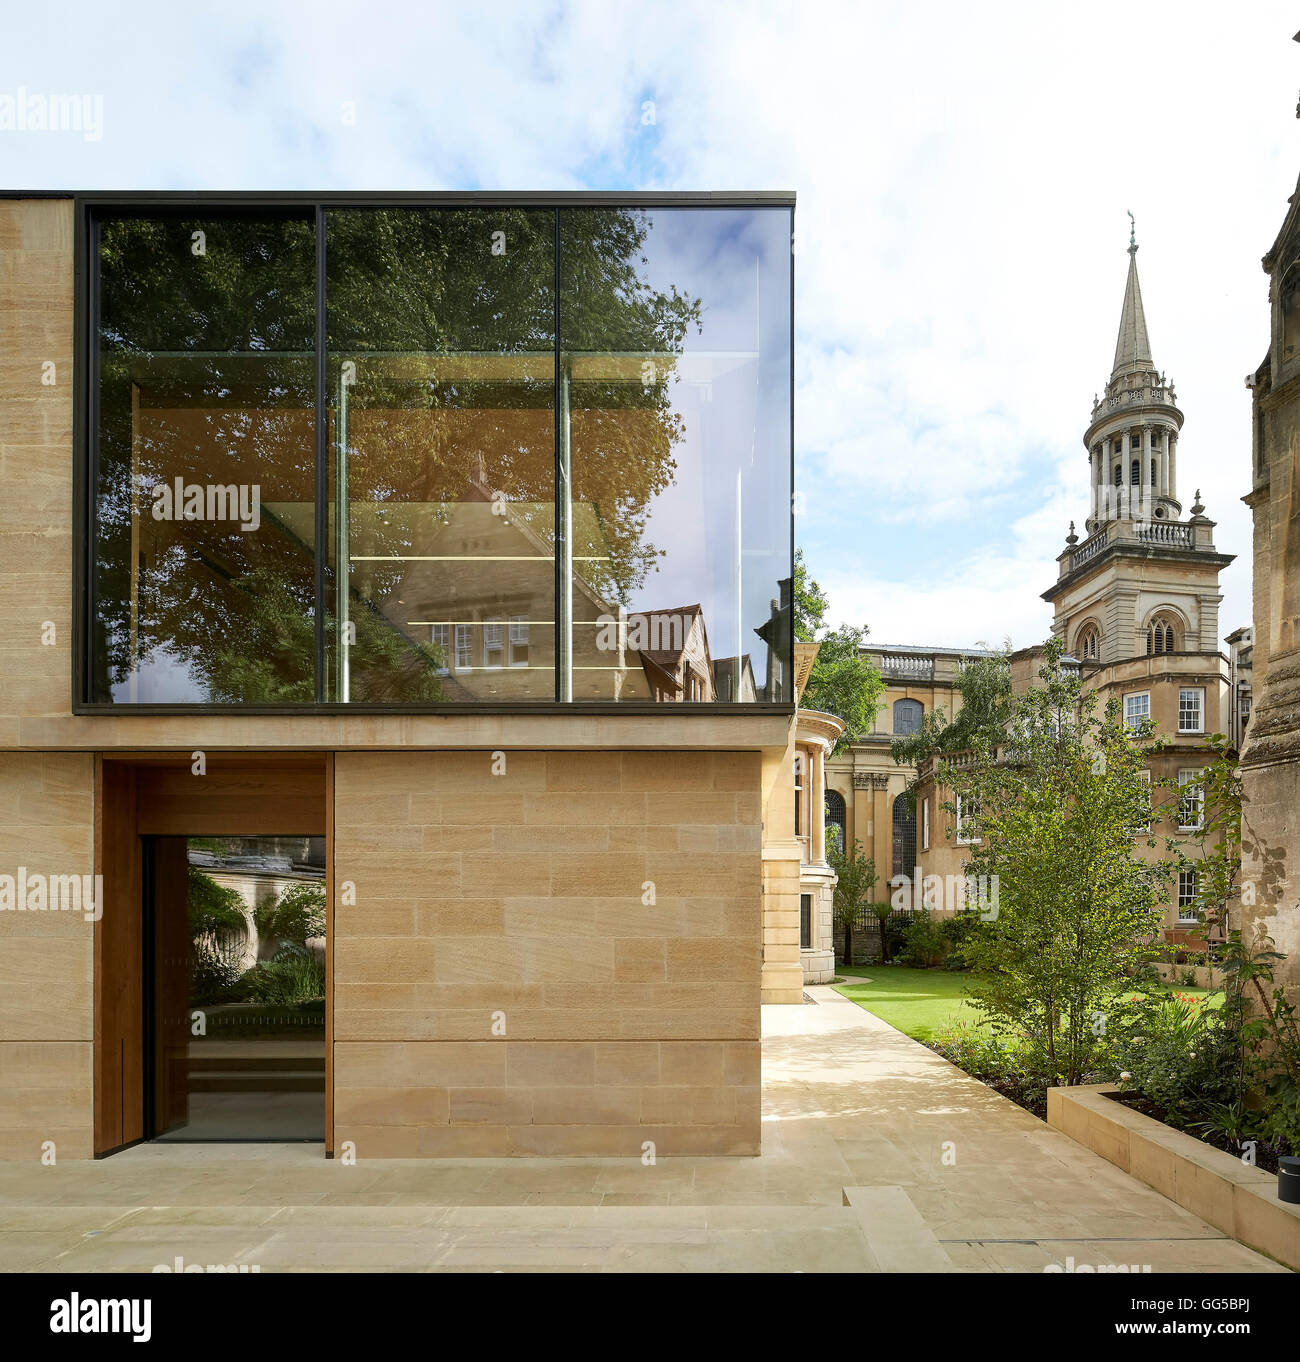 Bâtiment jardin moderne dans son contexte historique college. Le jardin des capacités au Lincoln College, Oxford, Royaume-Uni. Architecte : Stanton Williams, 2015. Banque D'Images